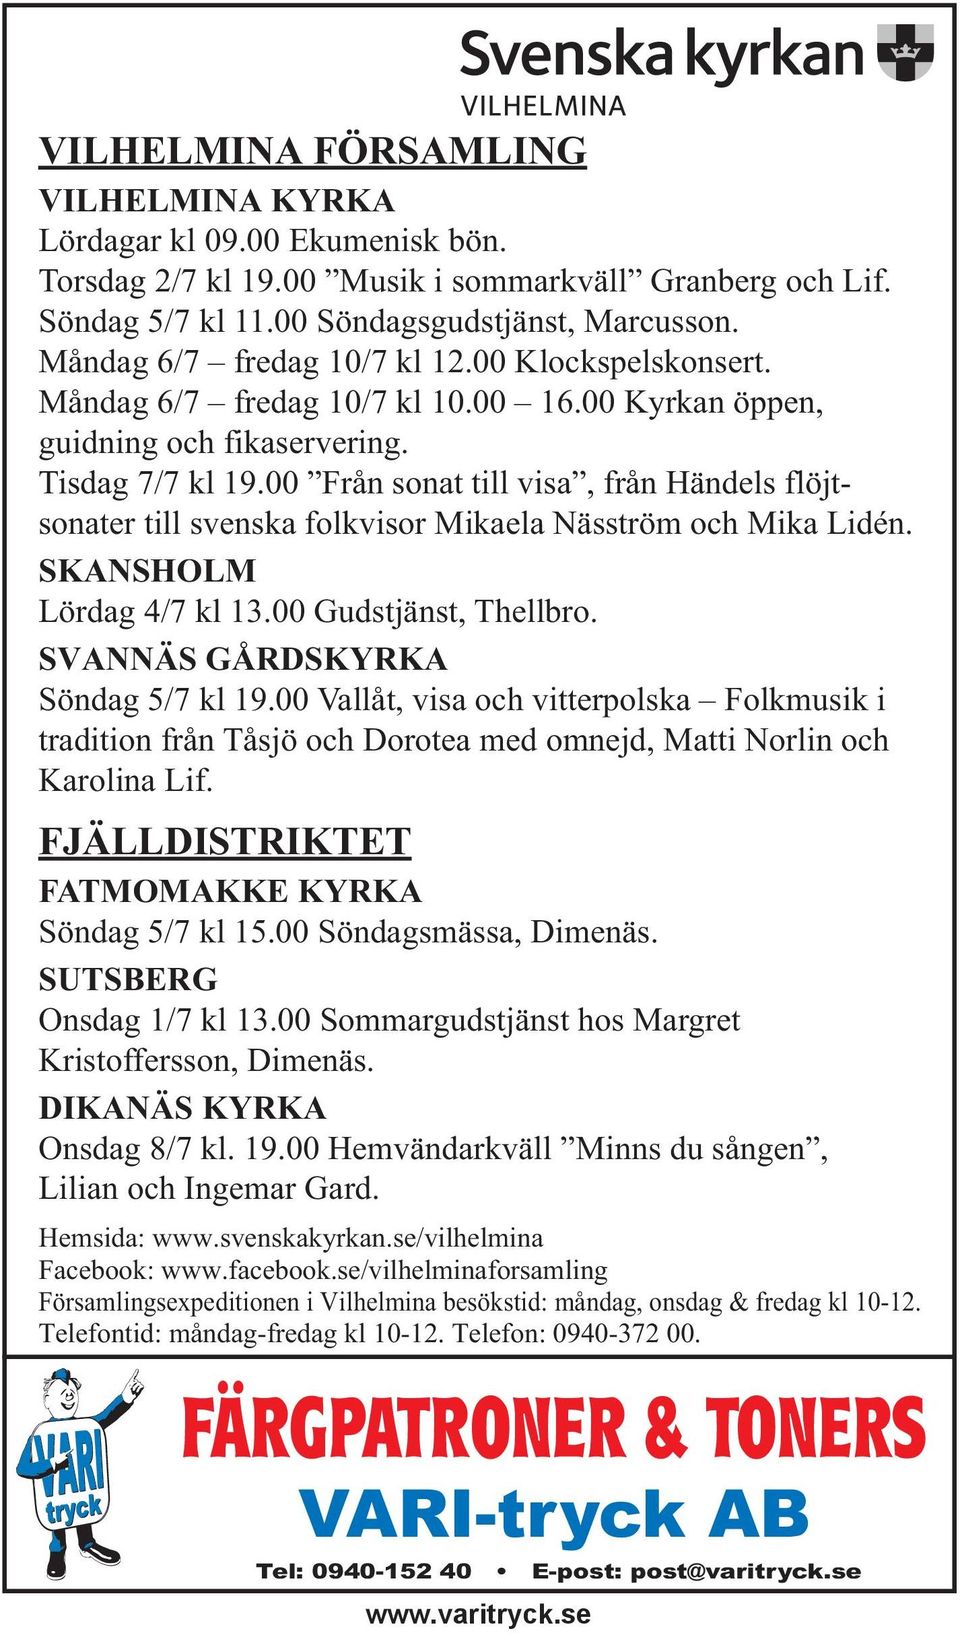 00 Från sonat till visa, från Händels flöjtsonater till svenska folkvisor Mikaela Näsström och Mika Lidén. SKANSHOLM Lördag 4/7 kl 13.00 Gudstjänst, Thellbro. SVANNÄS GÅRDSKYRKA Söndag 5/7 kl 19.